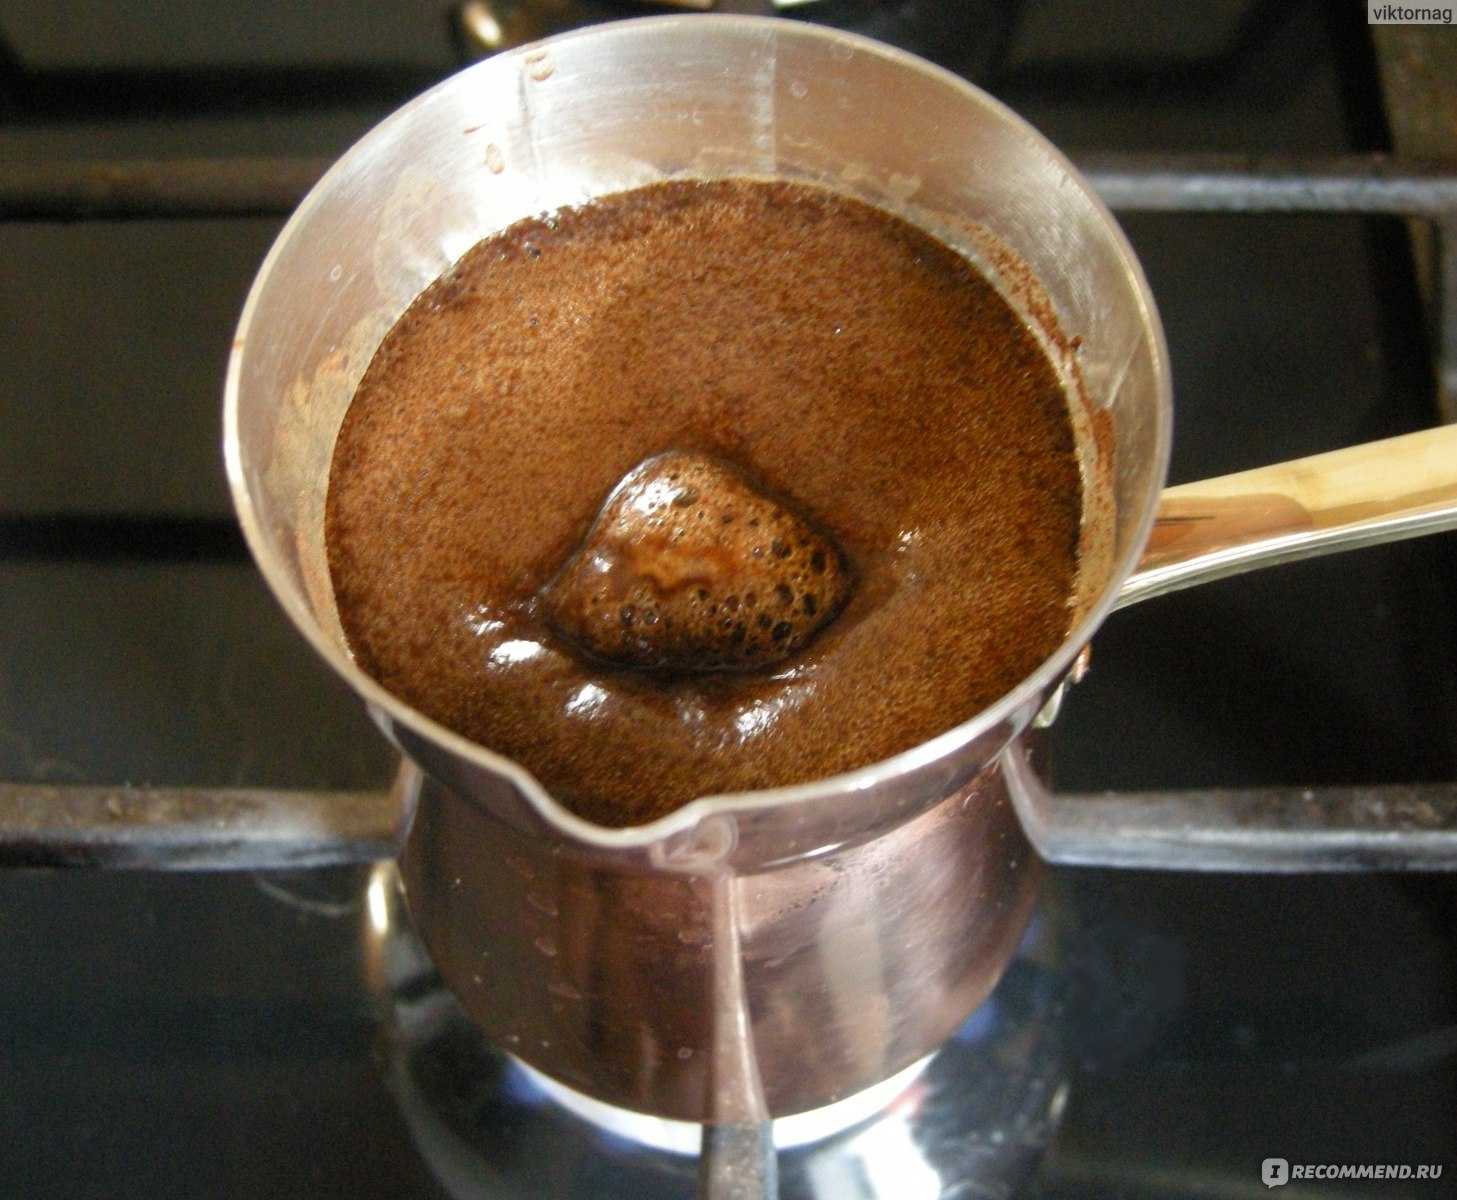 Кофе с пенкой, как готовить самостоятельно, рецепты